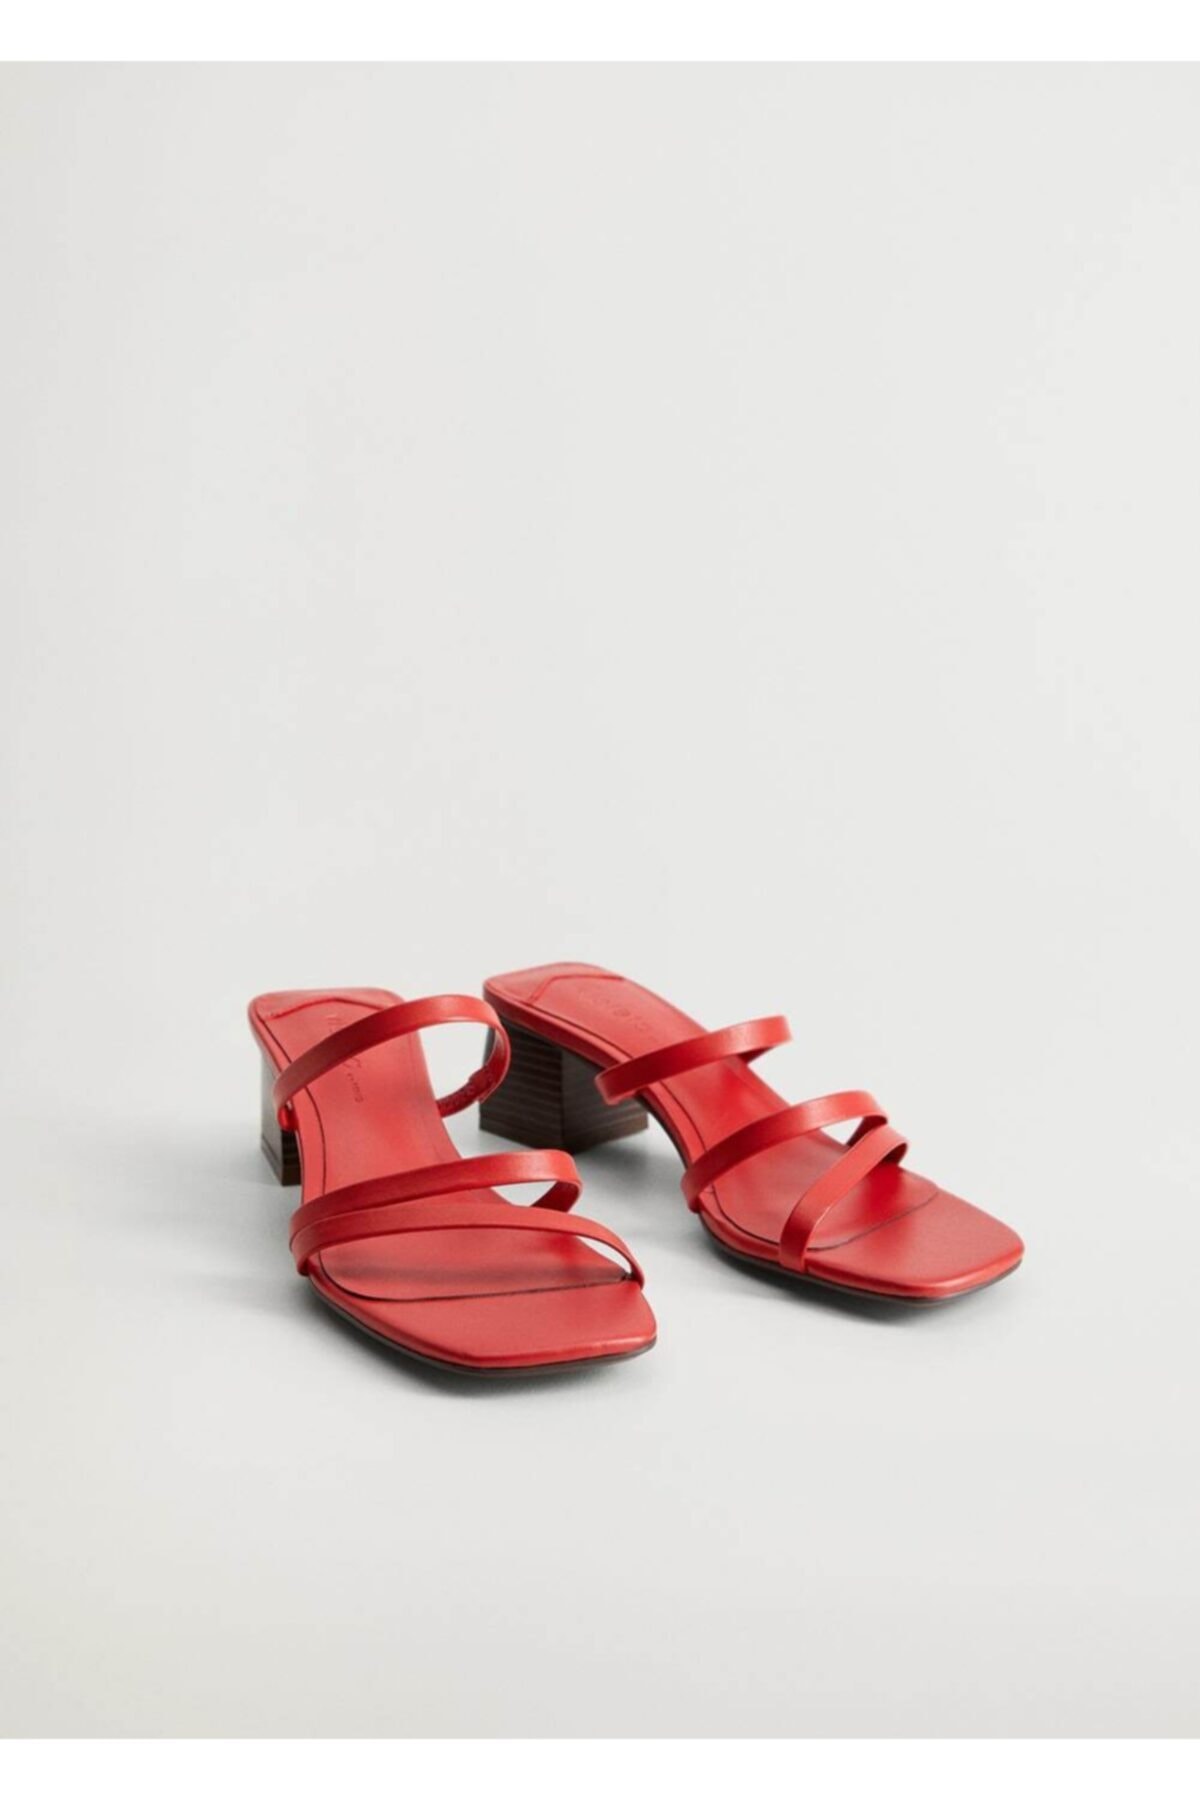 Violeta by MANGO Kadın Kırmızı Deri Bantlı Sandalet 67006310